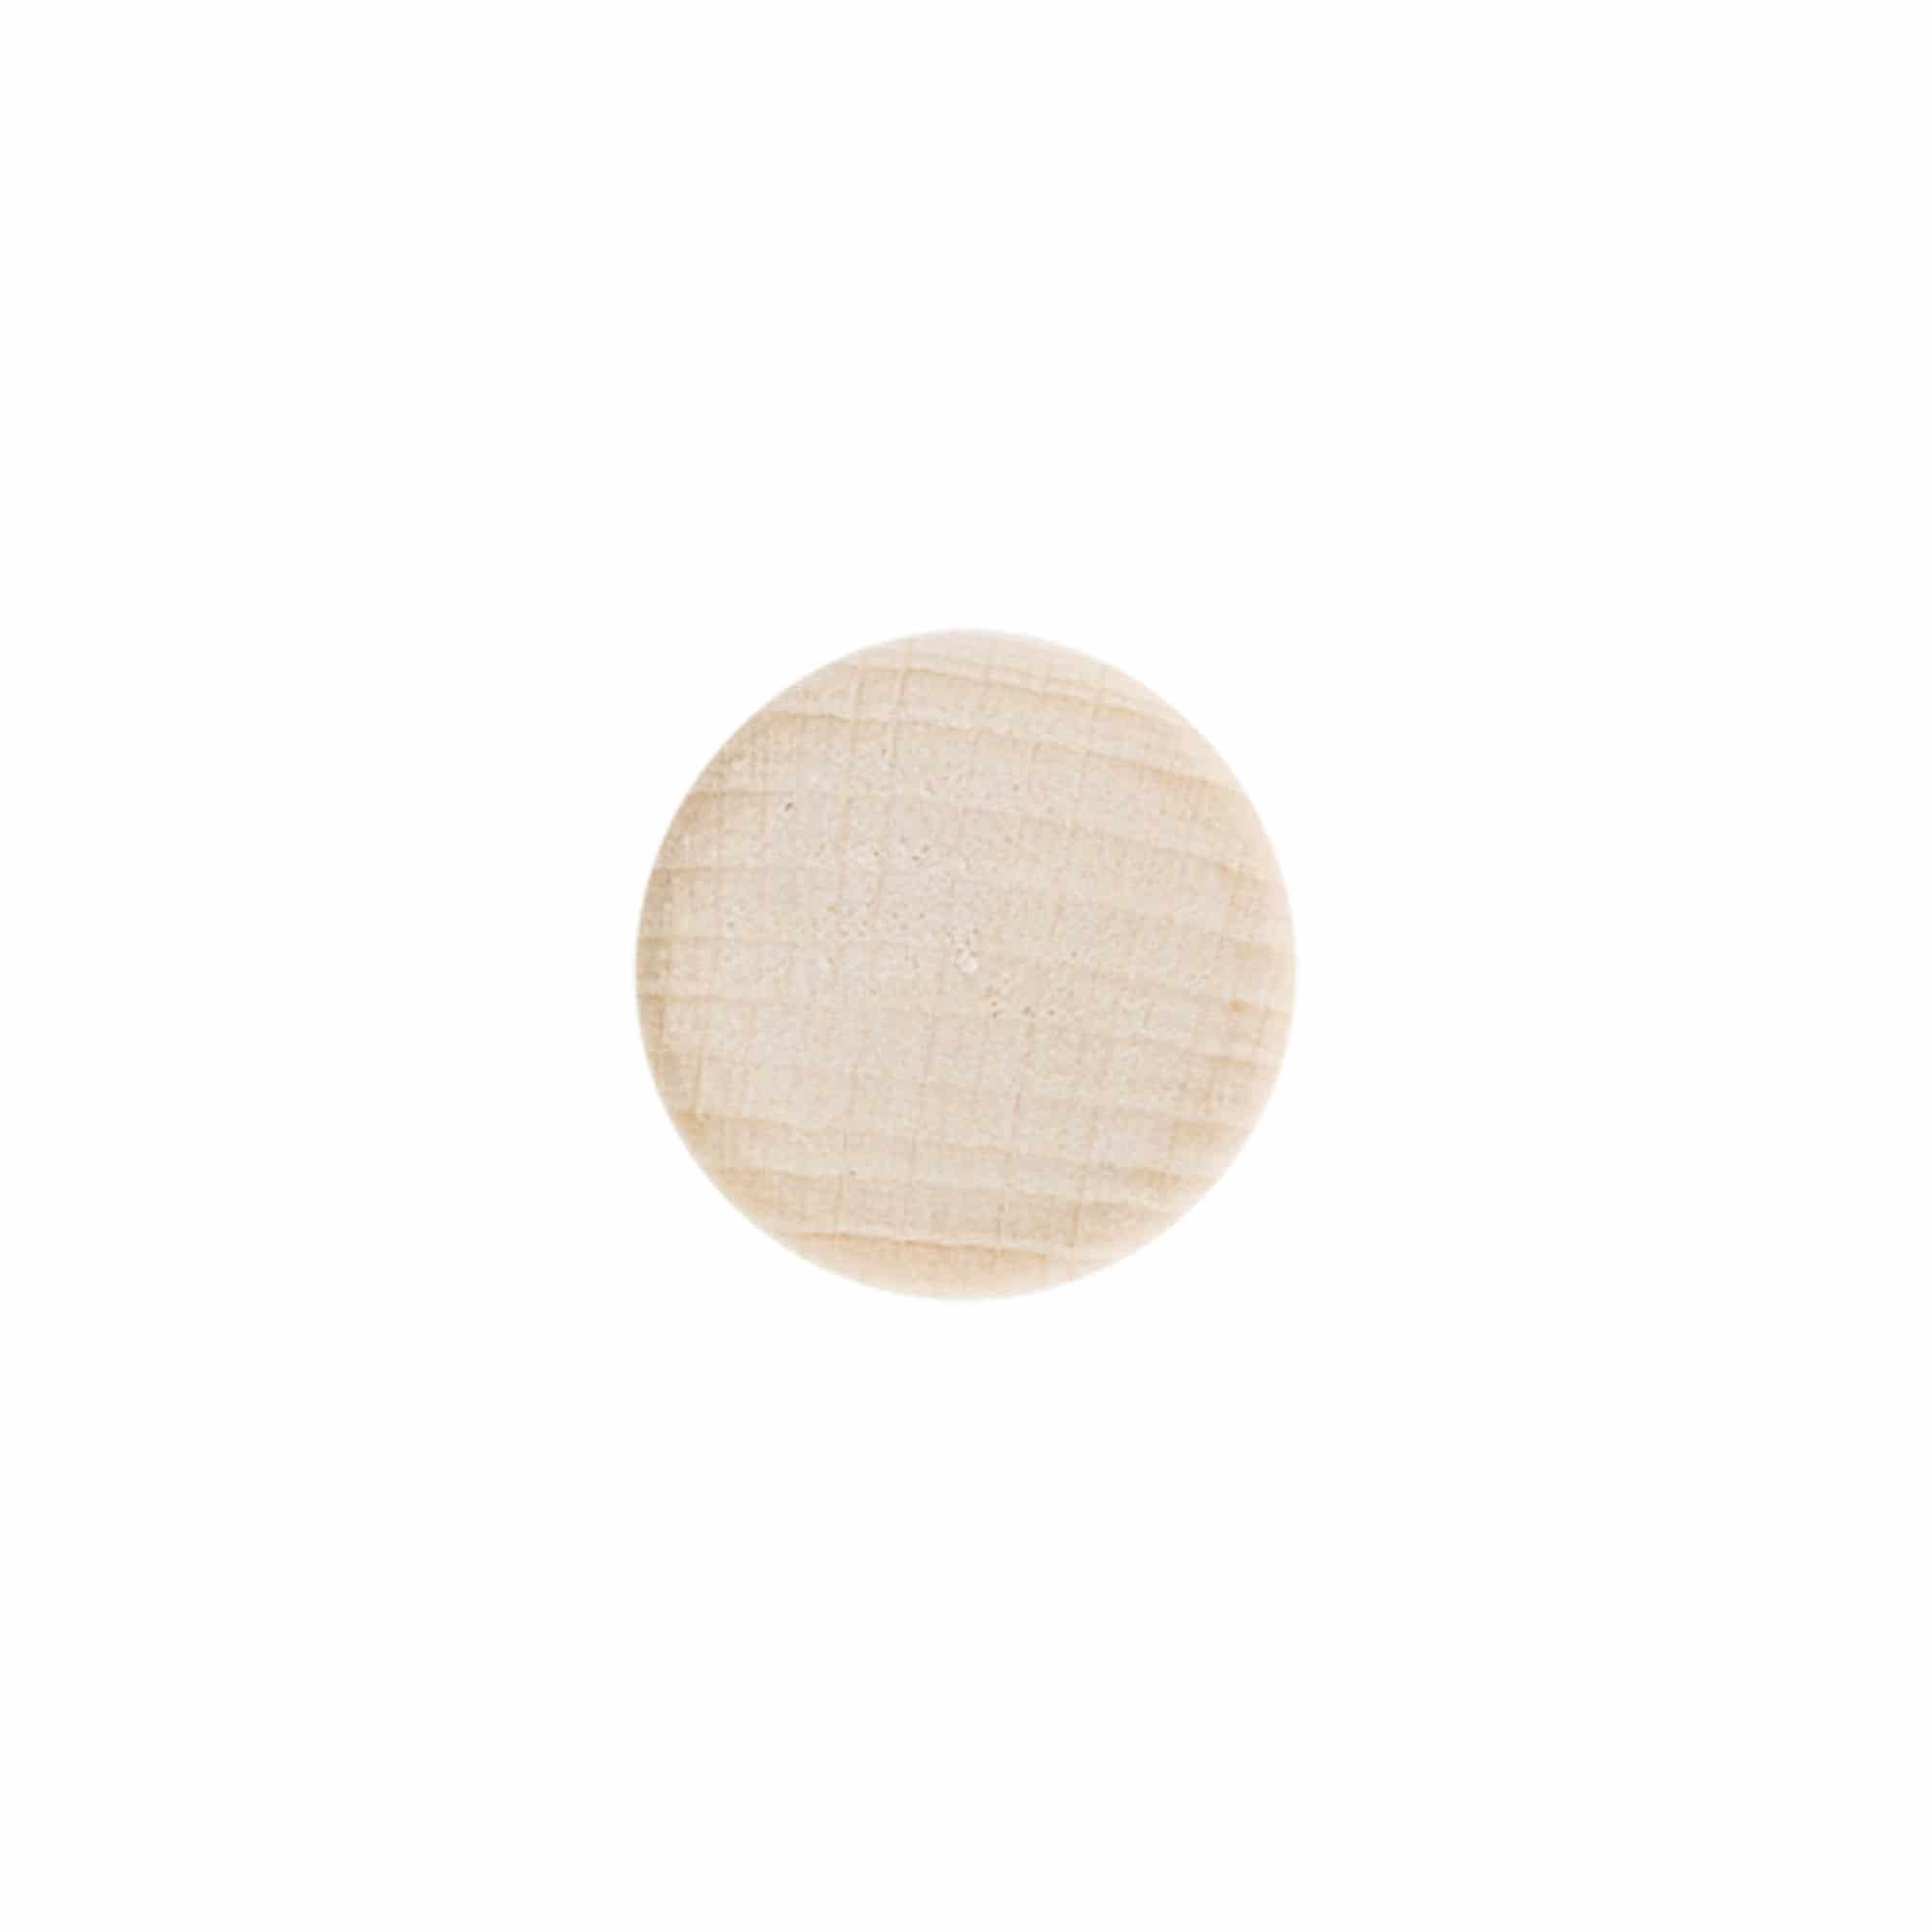 Dopkurk, 18 mm, hout, voor monding: kurk